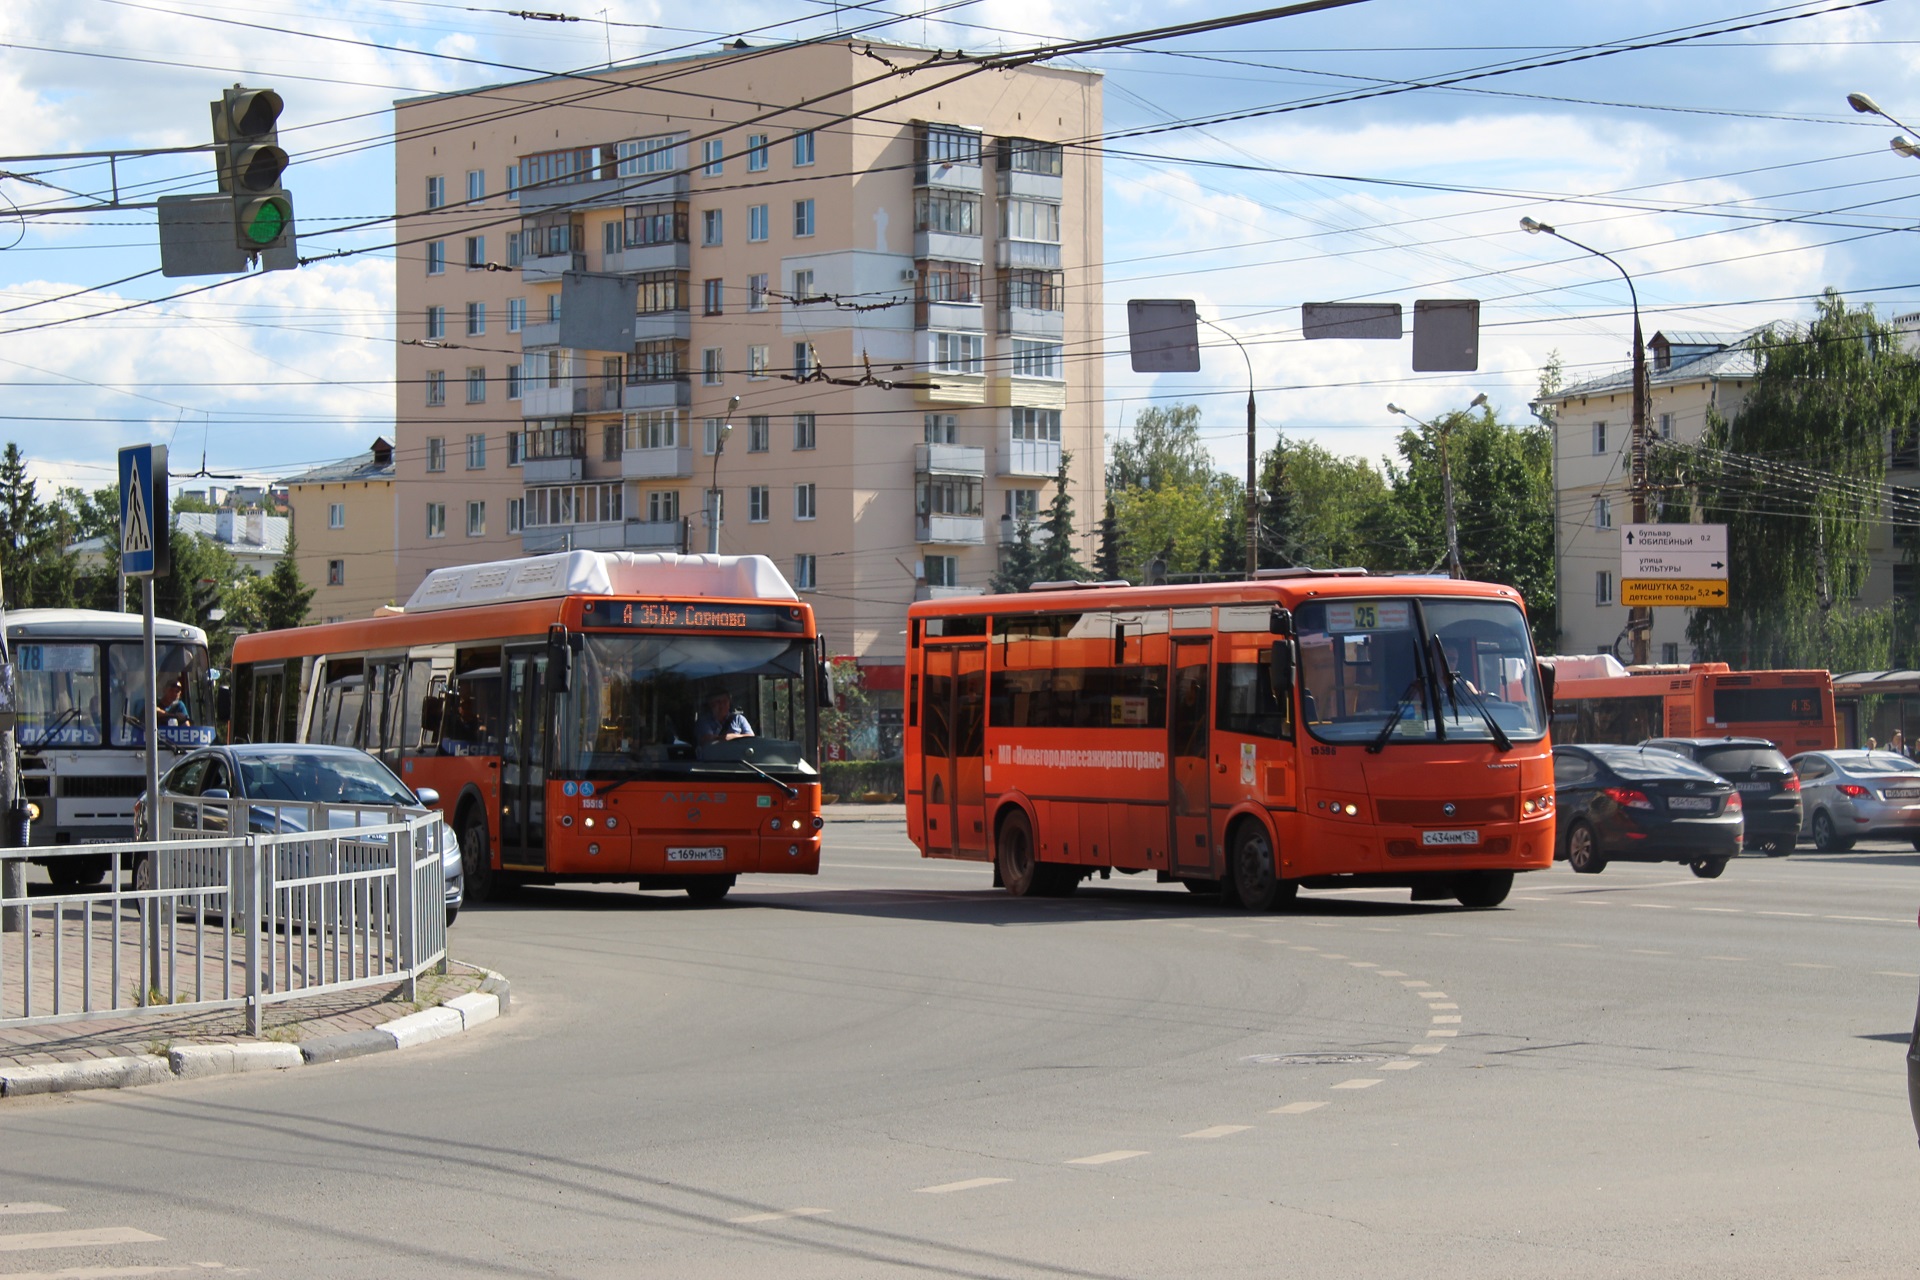 Схема движения автобусных маршрутов Воронежа будет скорректирована - фото 1